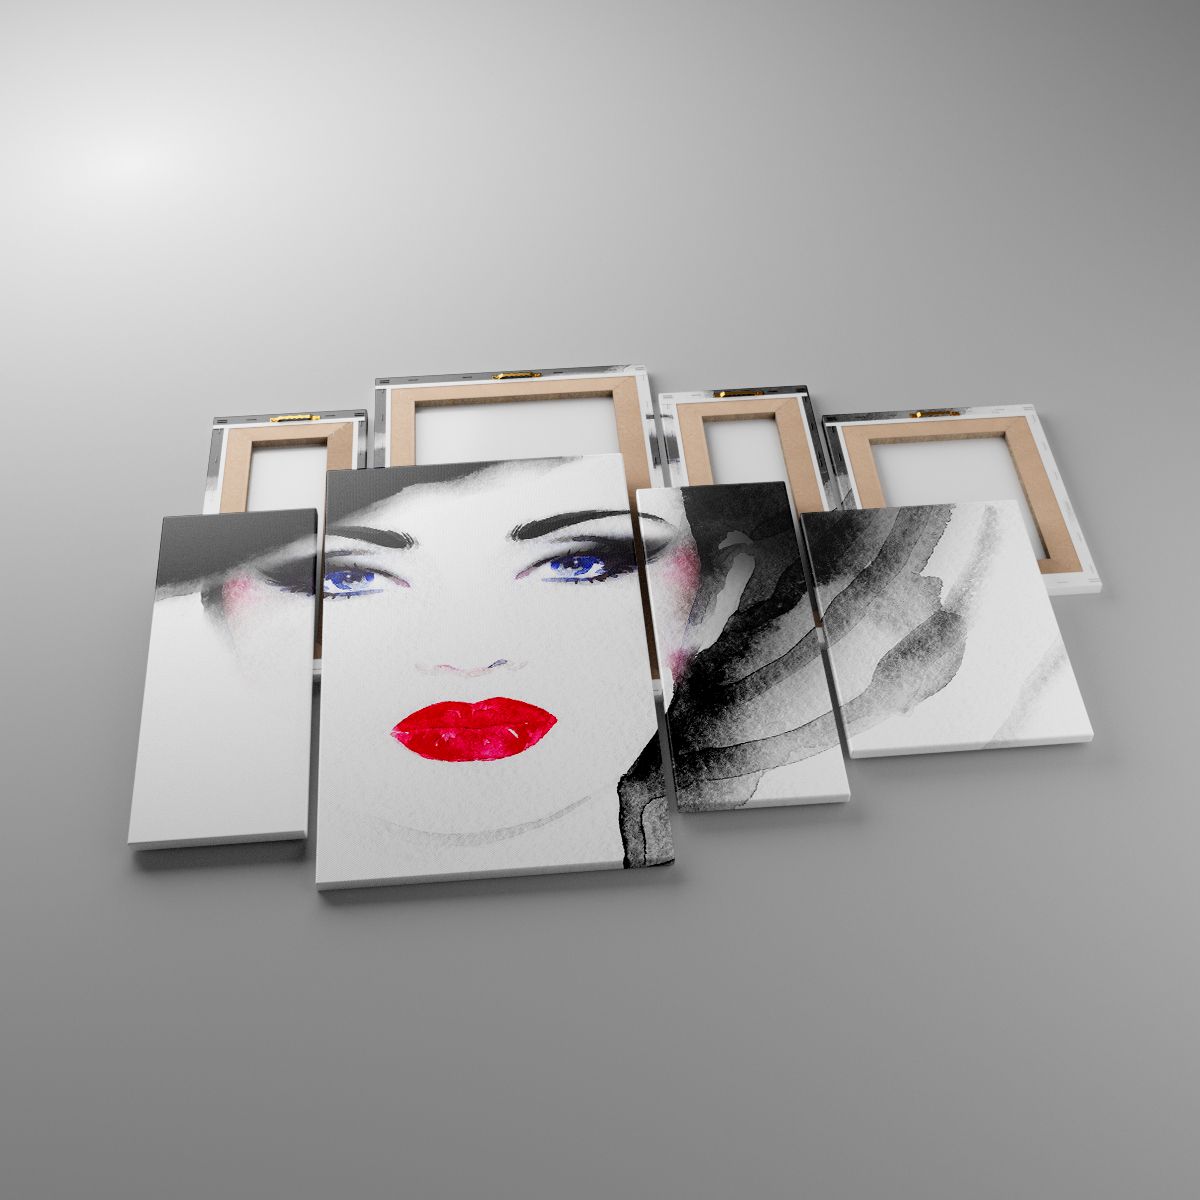 Leinwandbild Das Gesicht Der Frau, Leinwandbild Rote Lippen, Leinwandbild Blaue Augen, Leinwandbild Porträt Einer Frau, Leinwandbild Kunst